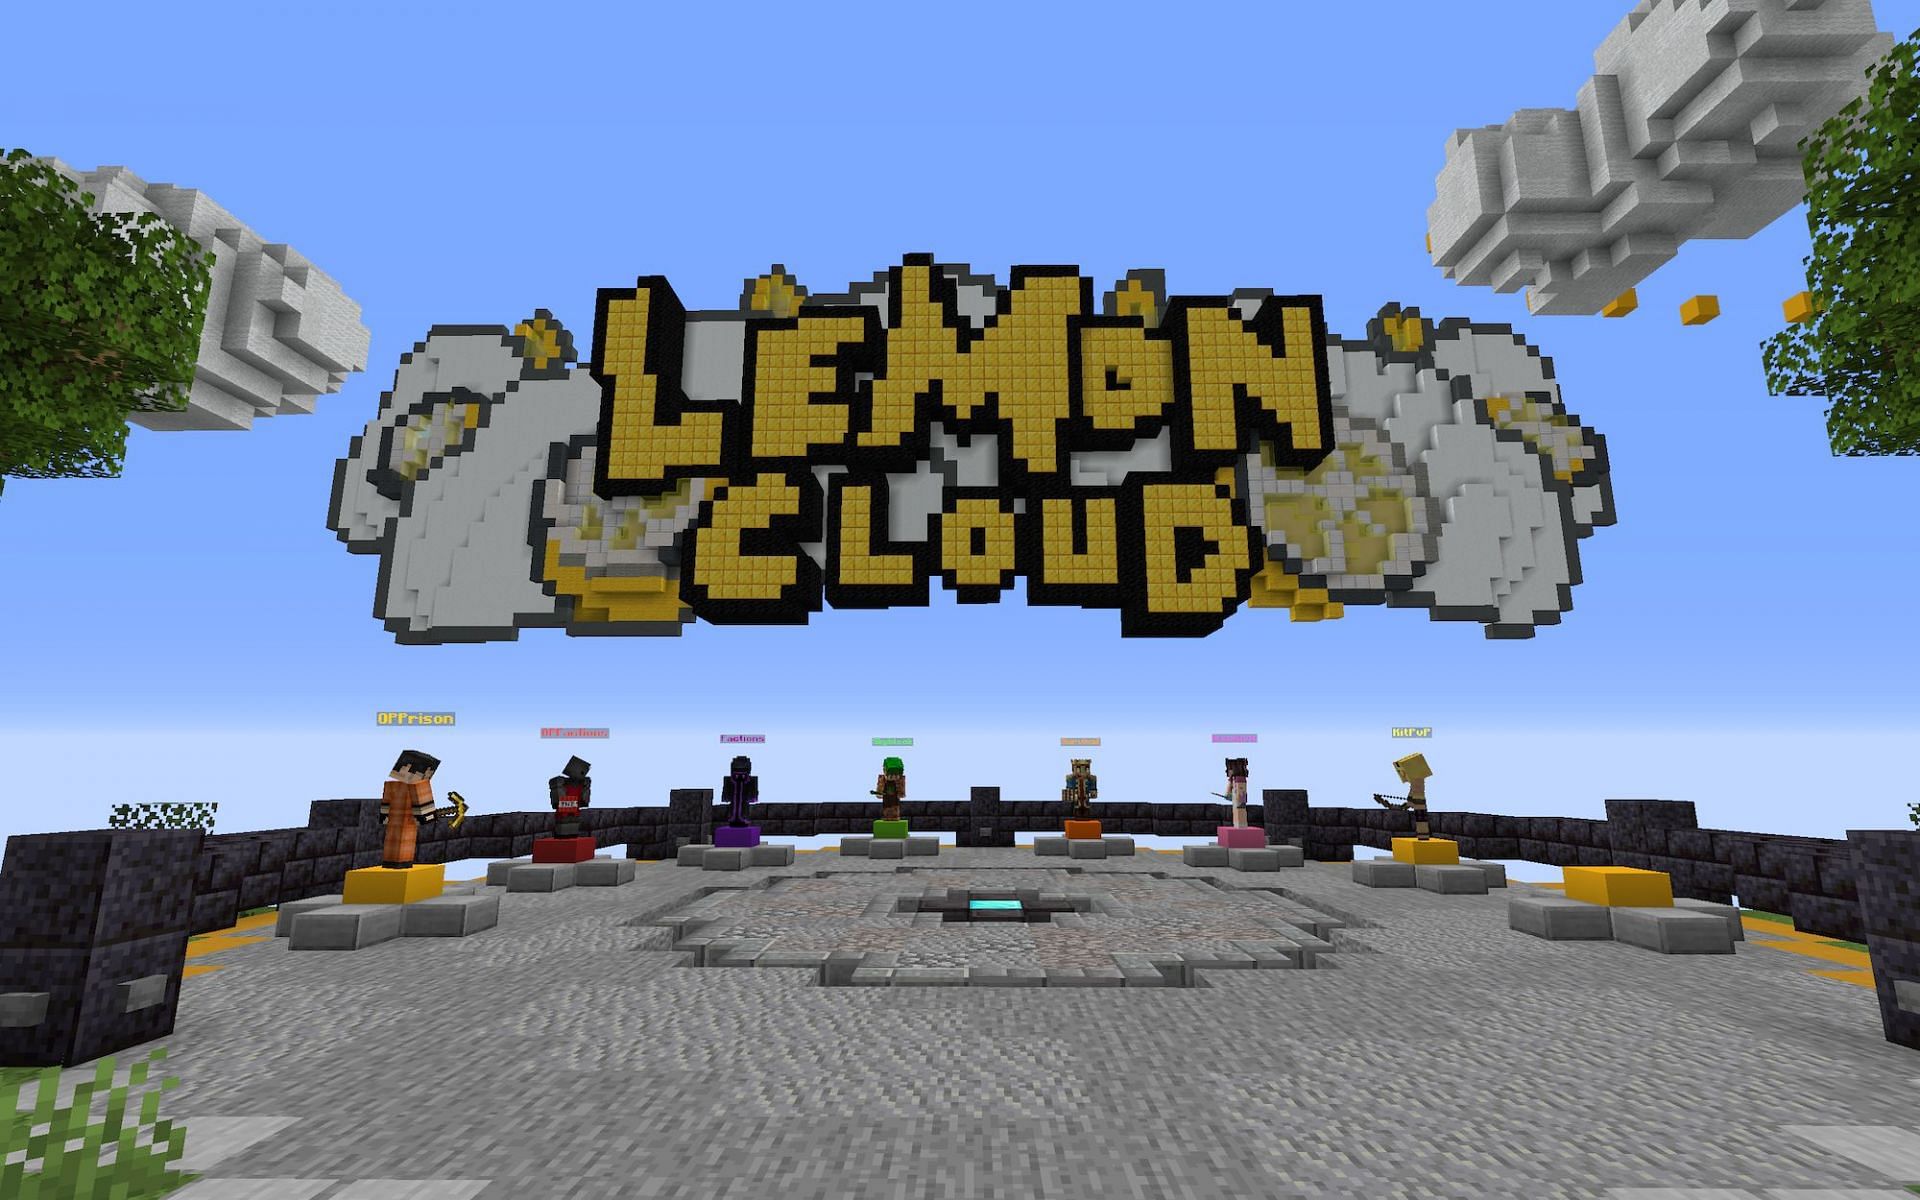 LemonCloud [Image via Minecraft]